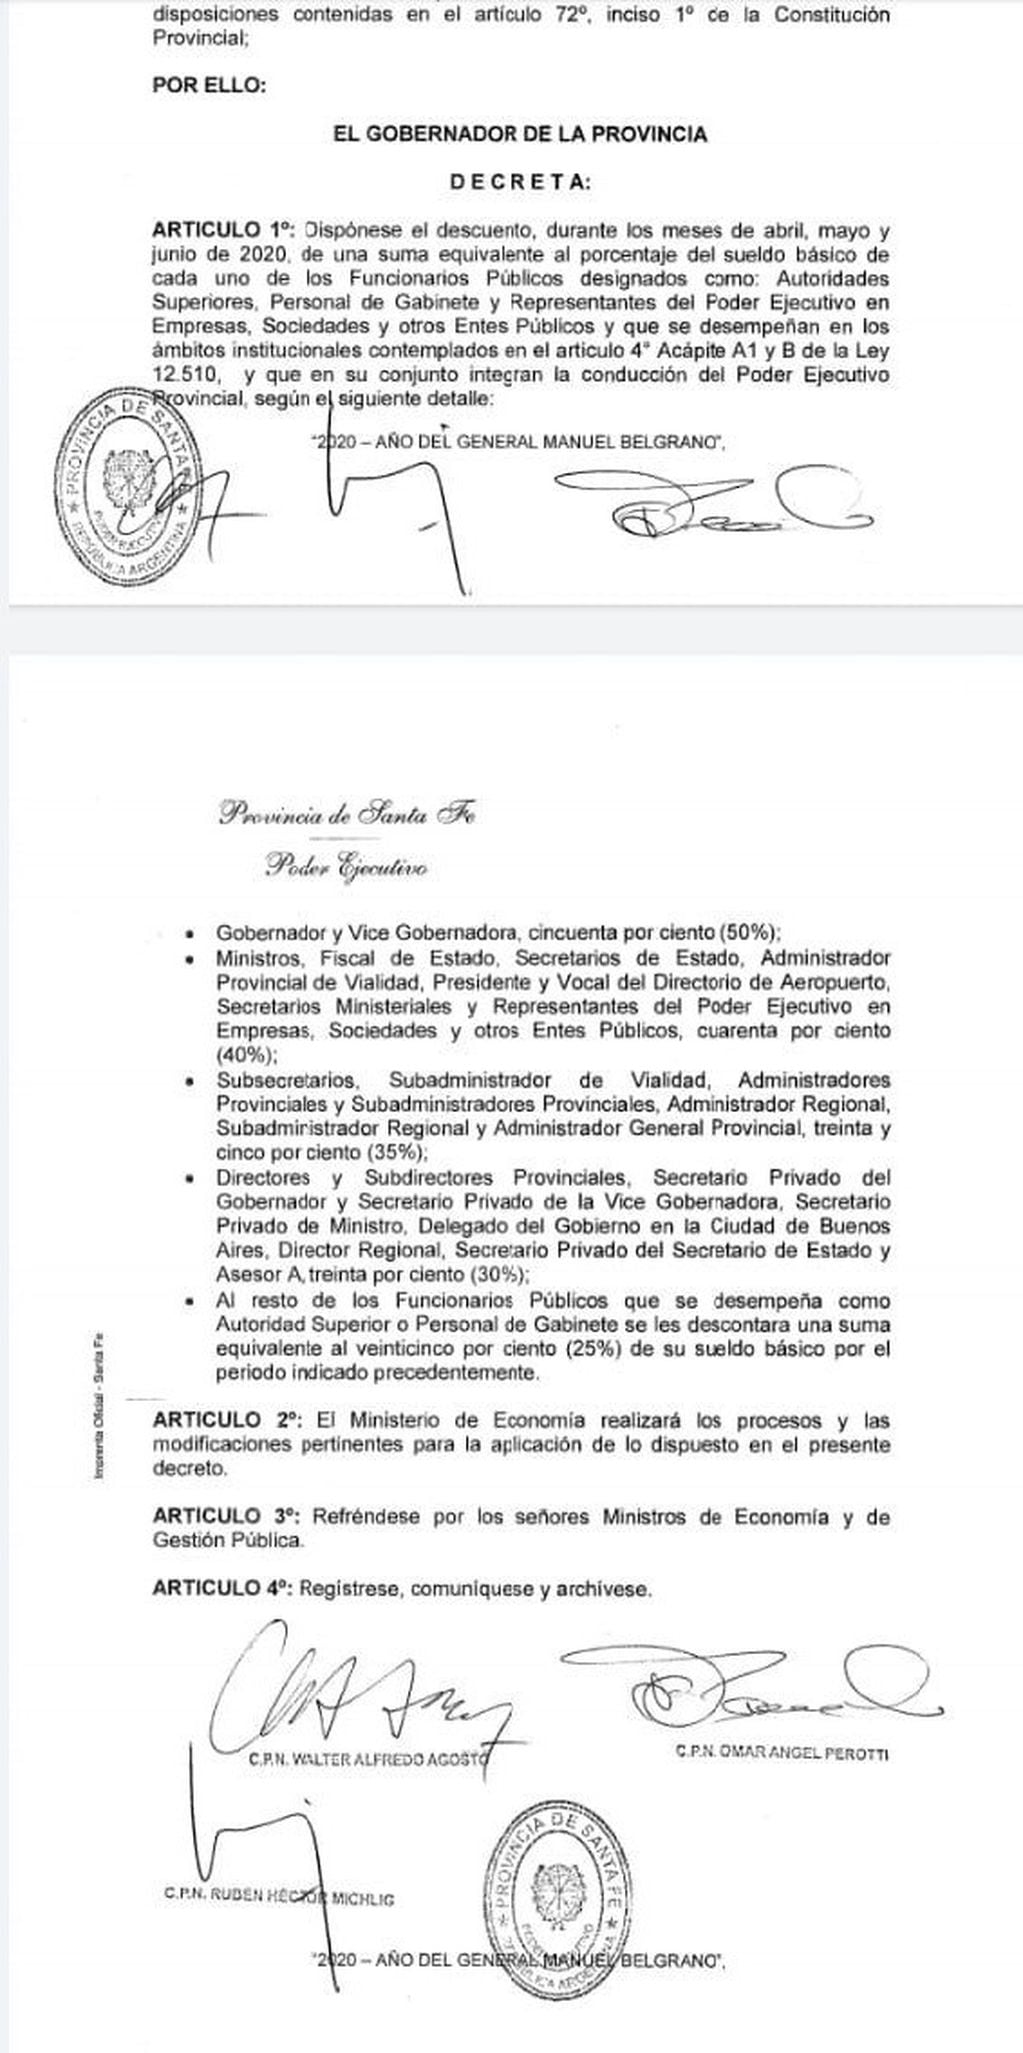 El decreto de Perotti.